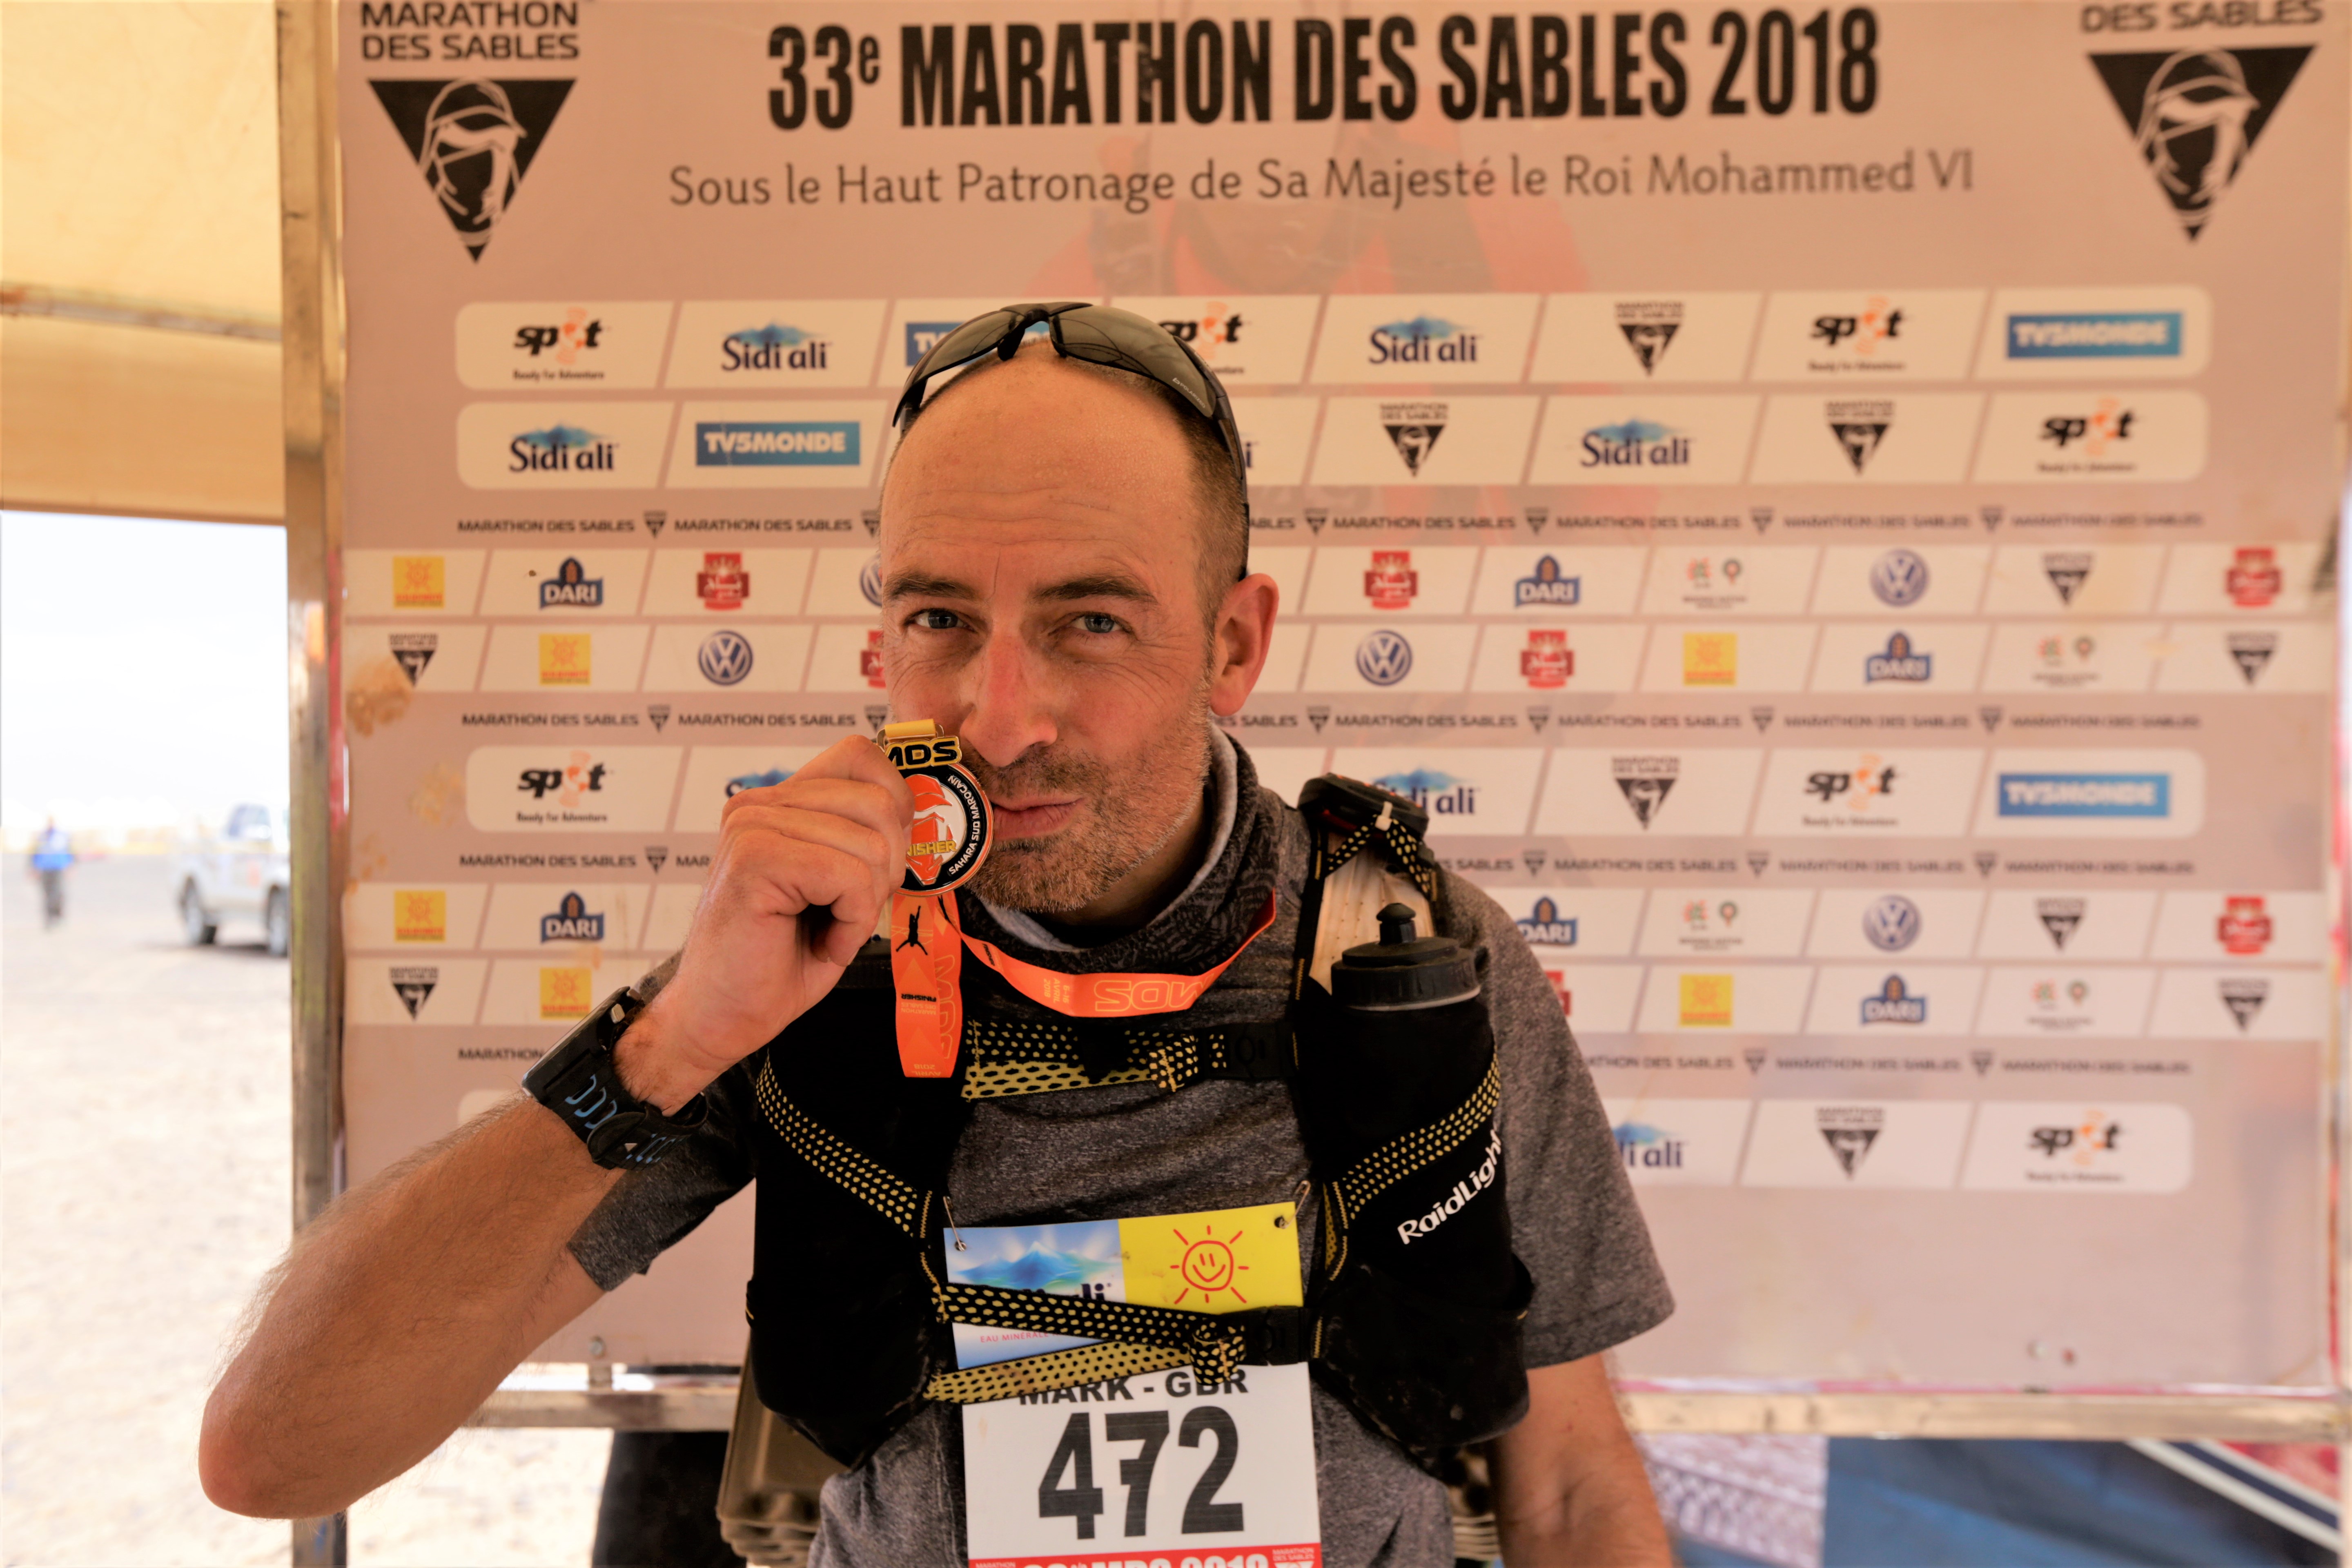 Mark Hillier holds his medal aloft after completing the Marathon des Sables